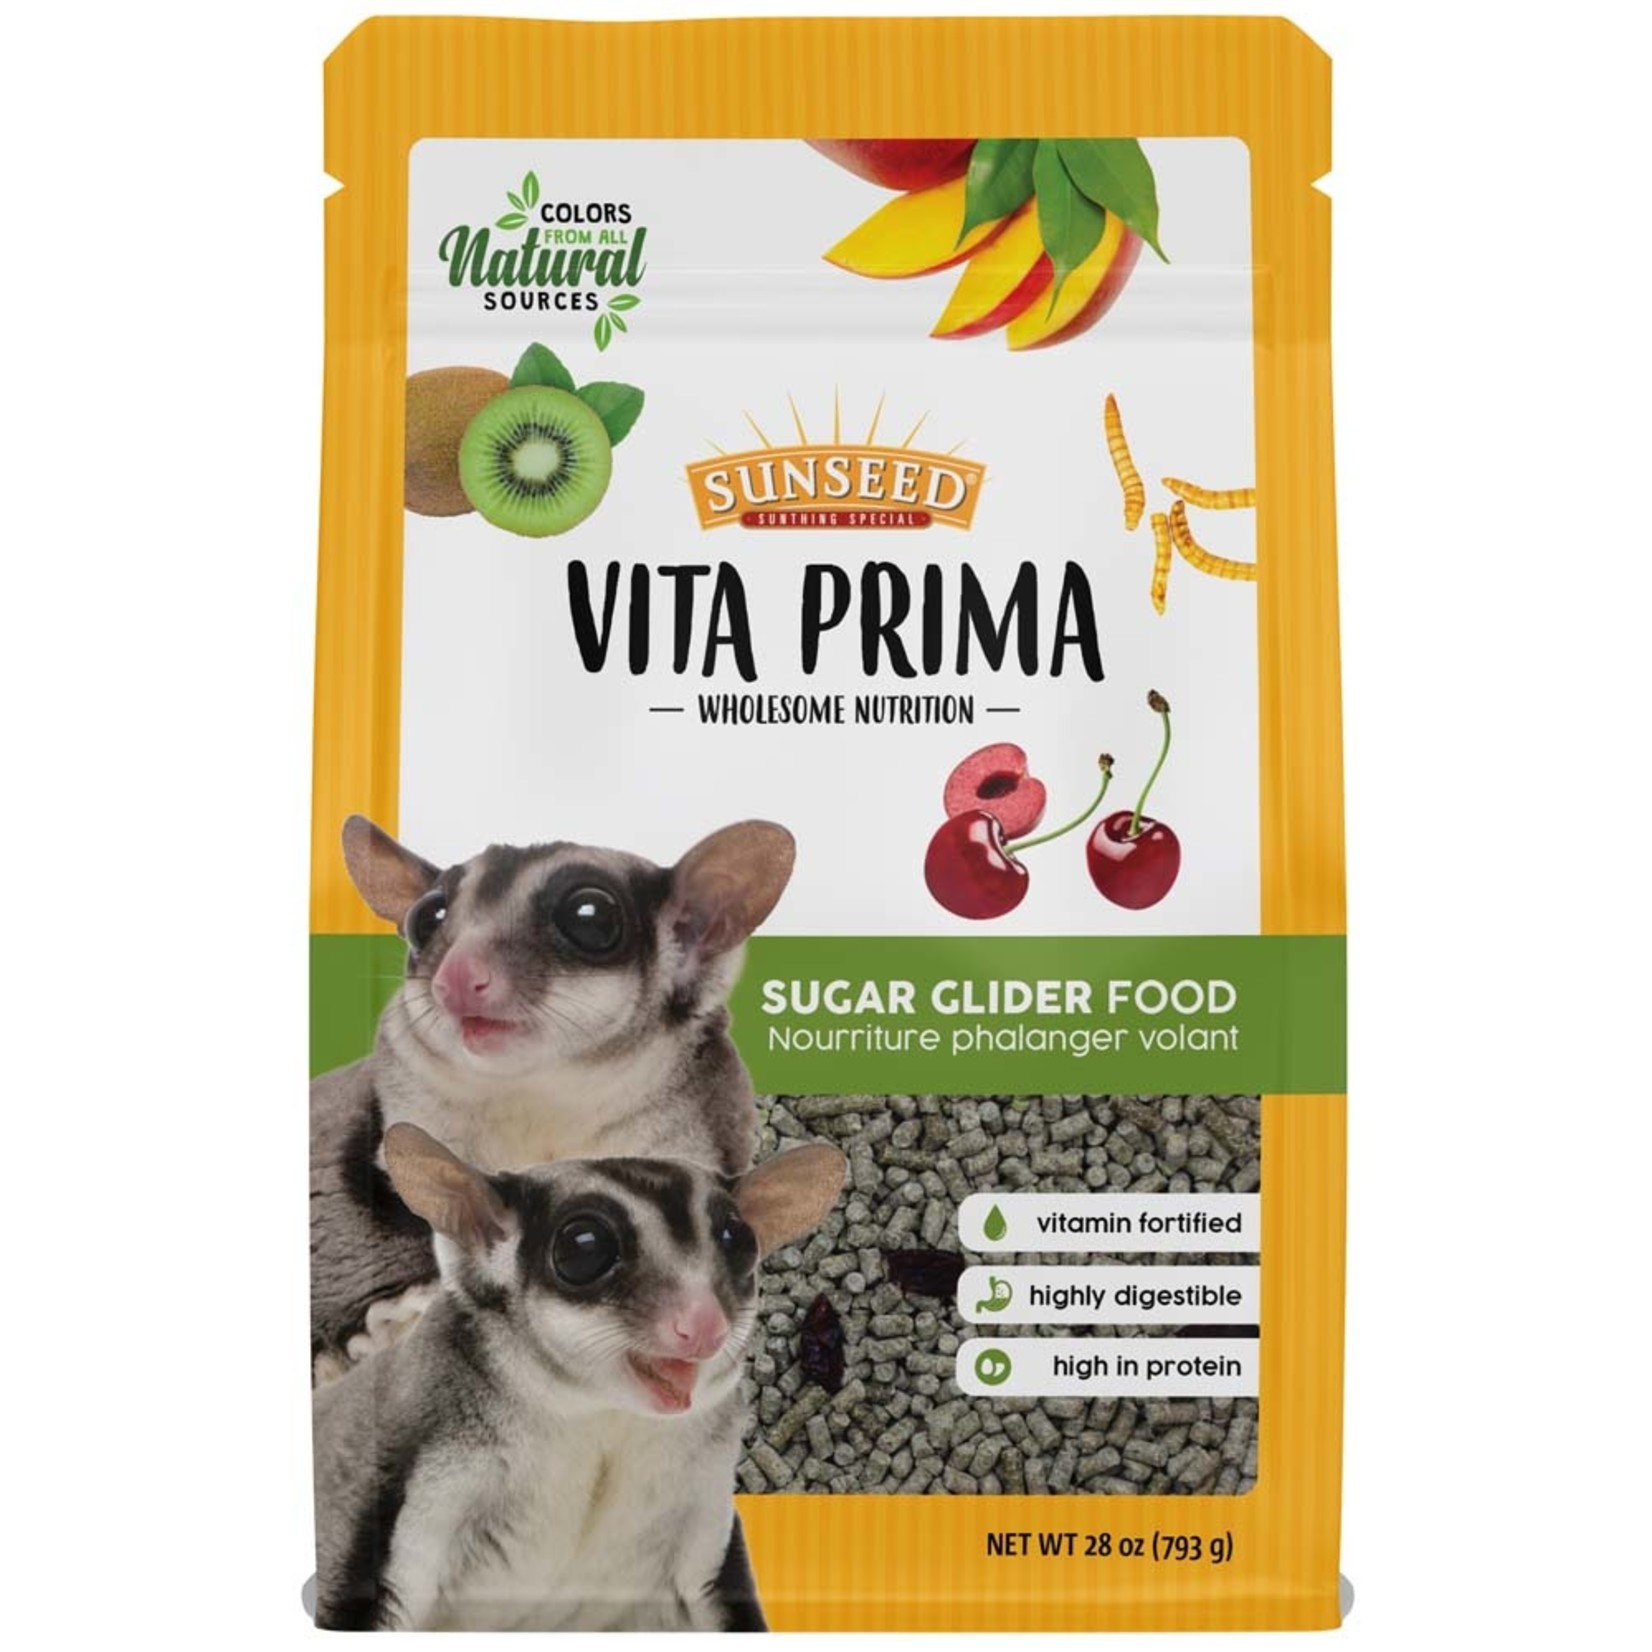 Sunseed Vita Prima Sugar Glider Food